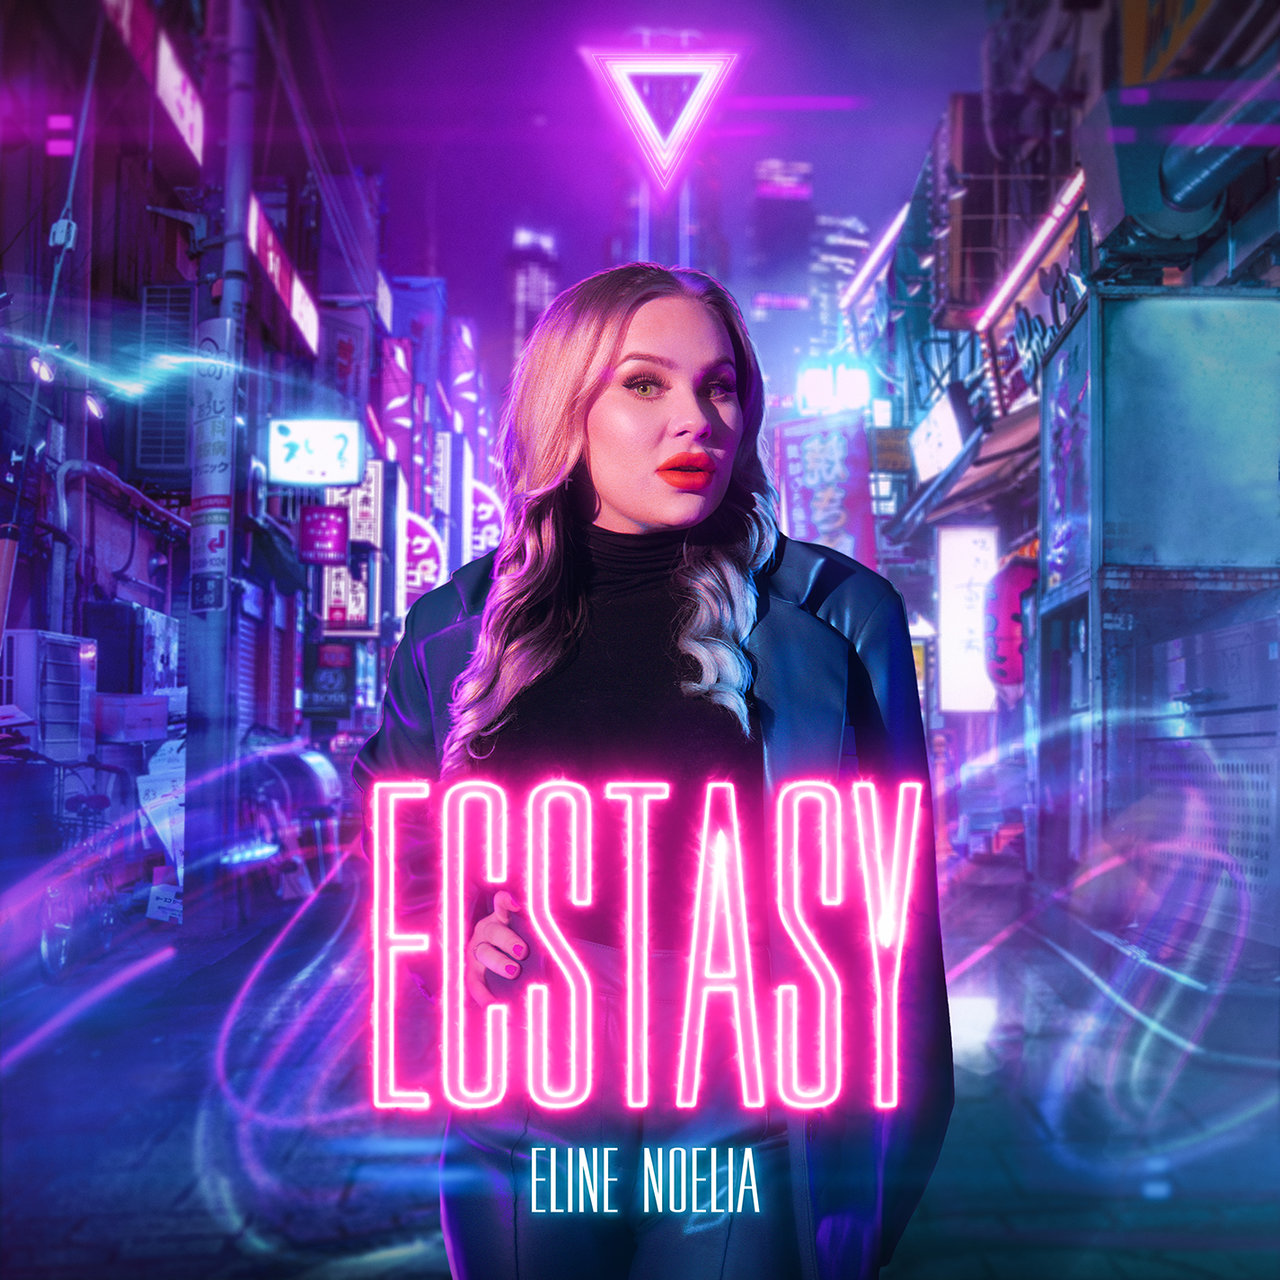 Eline Noelia Ecstasy cover artwork